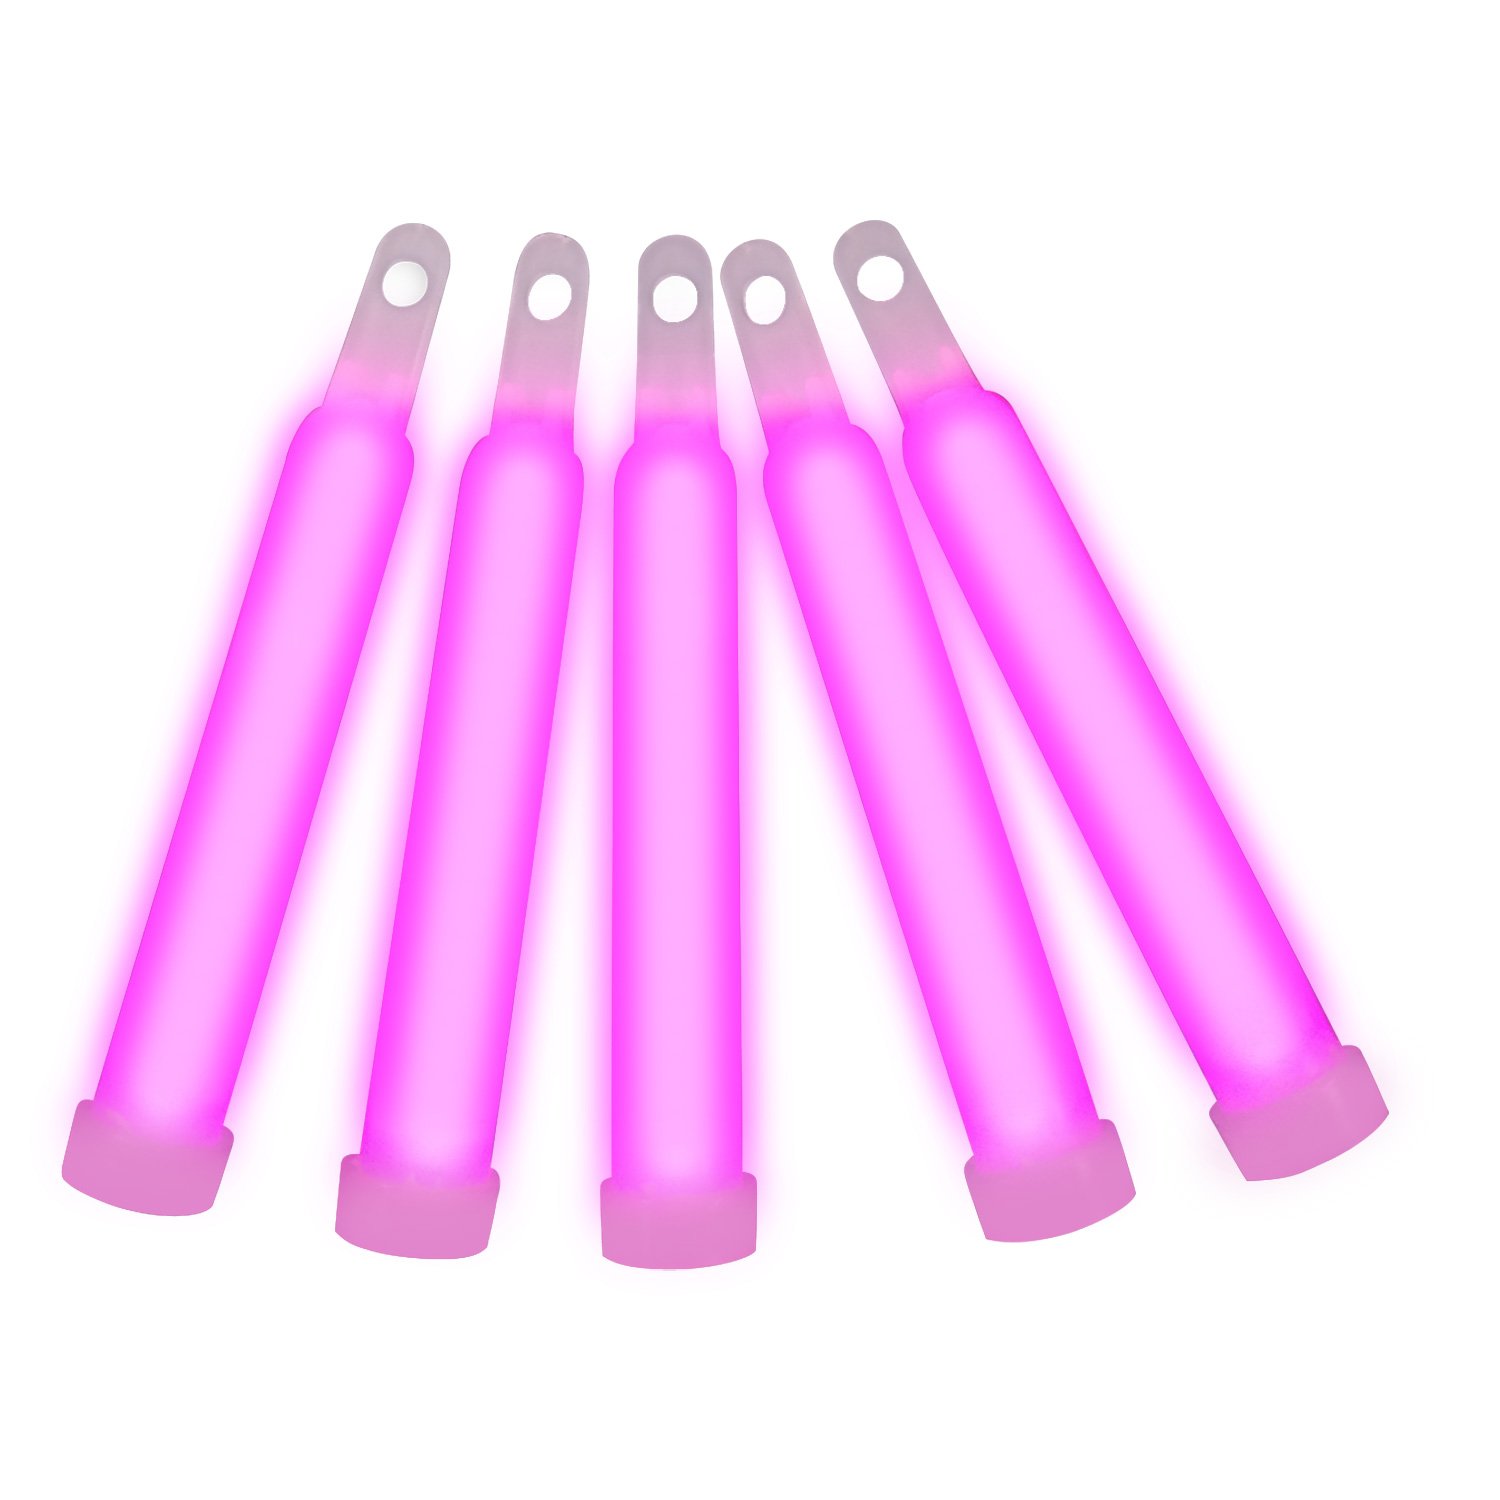 6 Inch Glow Sticks Pink